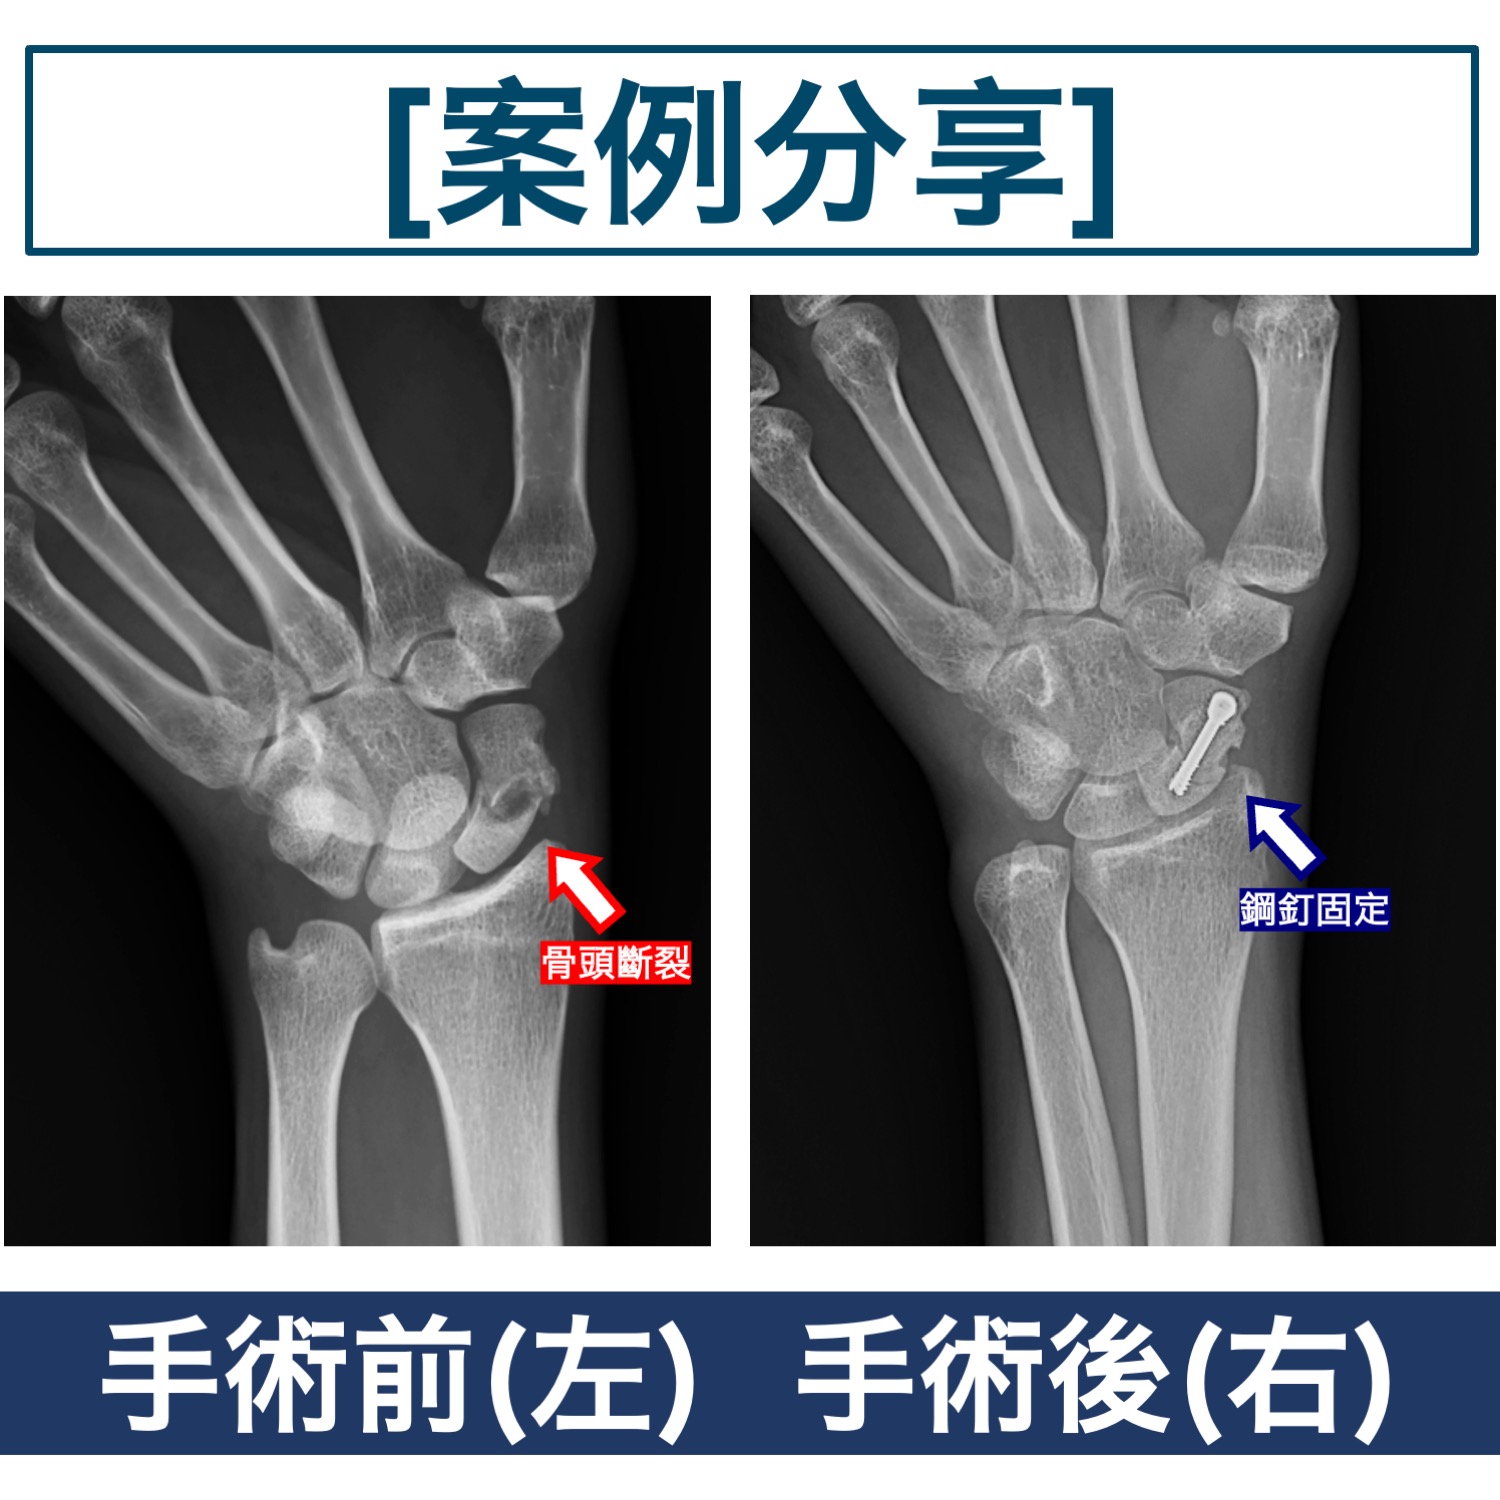 『8分钟创伤』轻松掌握：舟骨骨折骨折分型及治疗方案 - 上海开为医药科技有限公司--创伤、肢体矫形技术解决方案的专业服务商